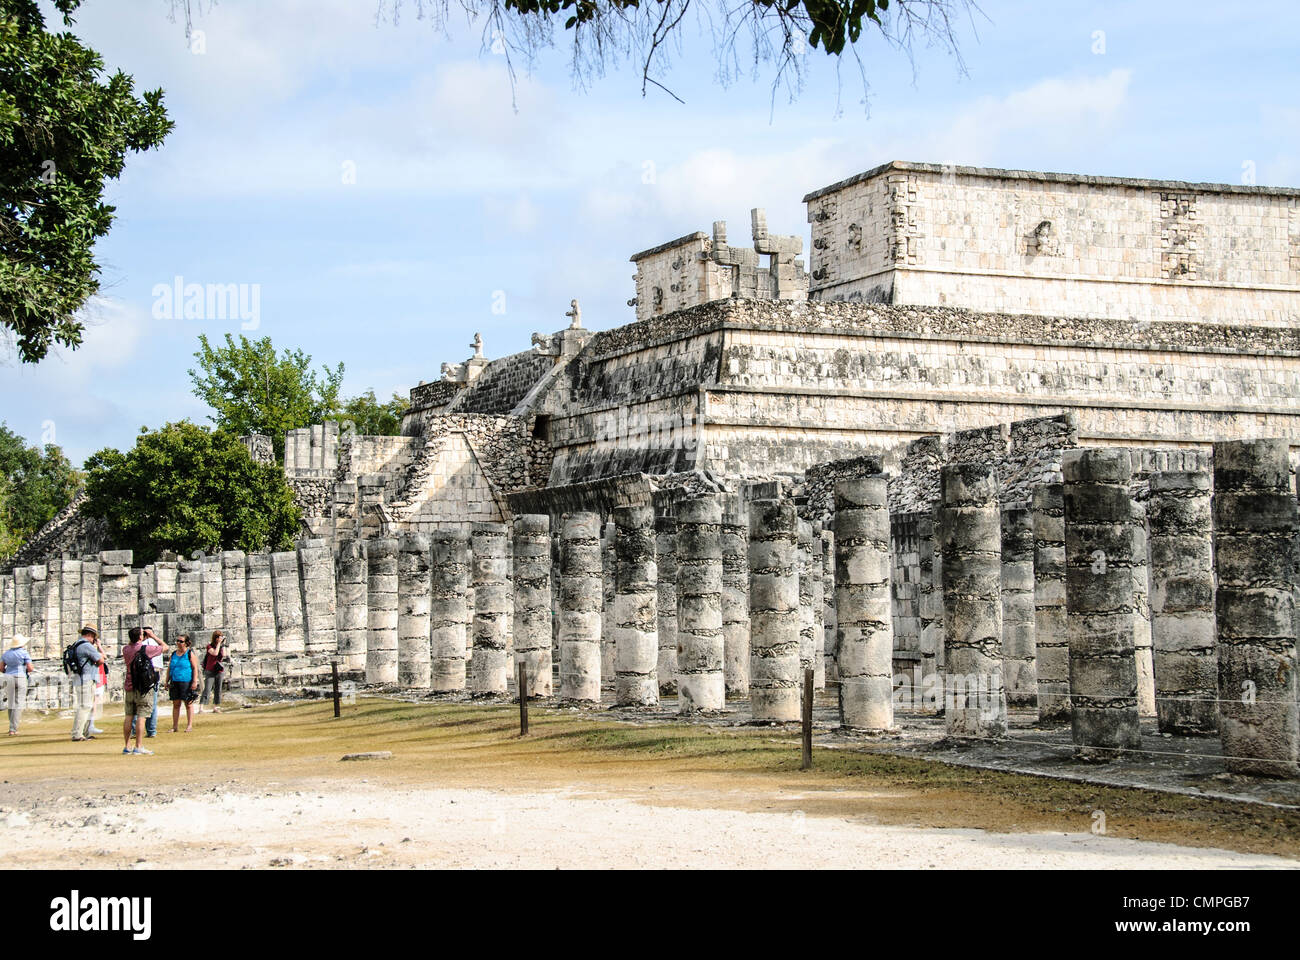 CHICHEN ITZA, Mexico - The Temple of the Warriors at Chichen Itza, a pre-Columbian Maya site on Mexico's Yucatan Peninsula. Stock Photo